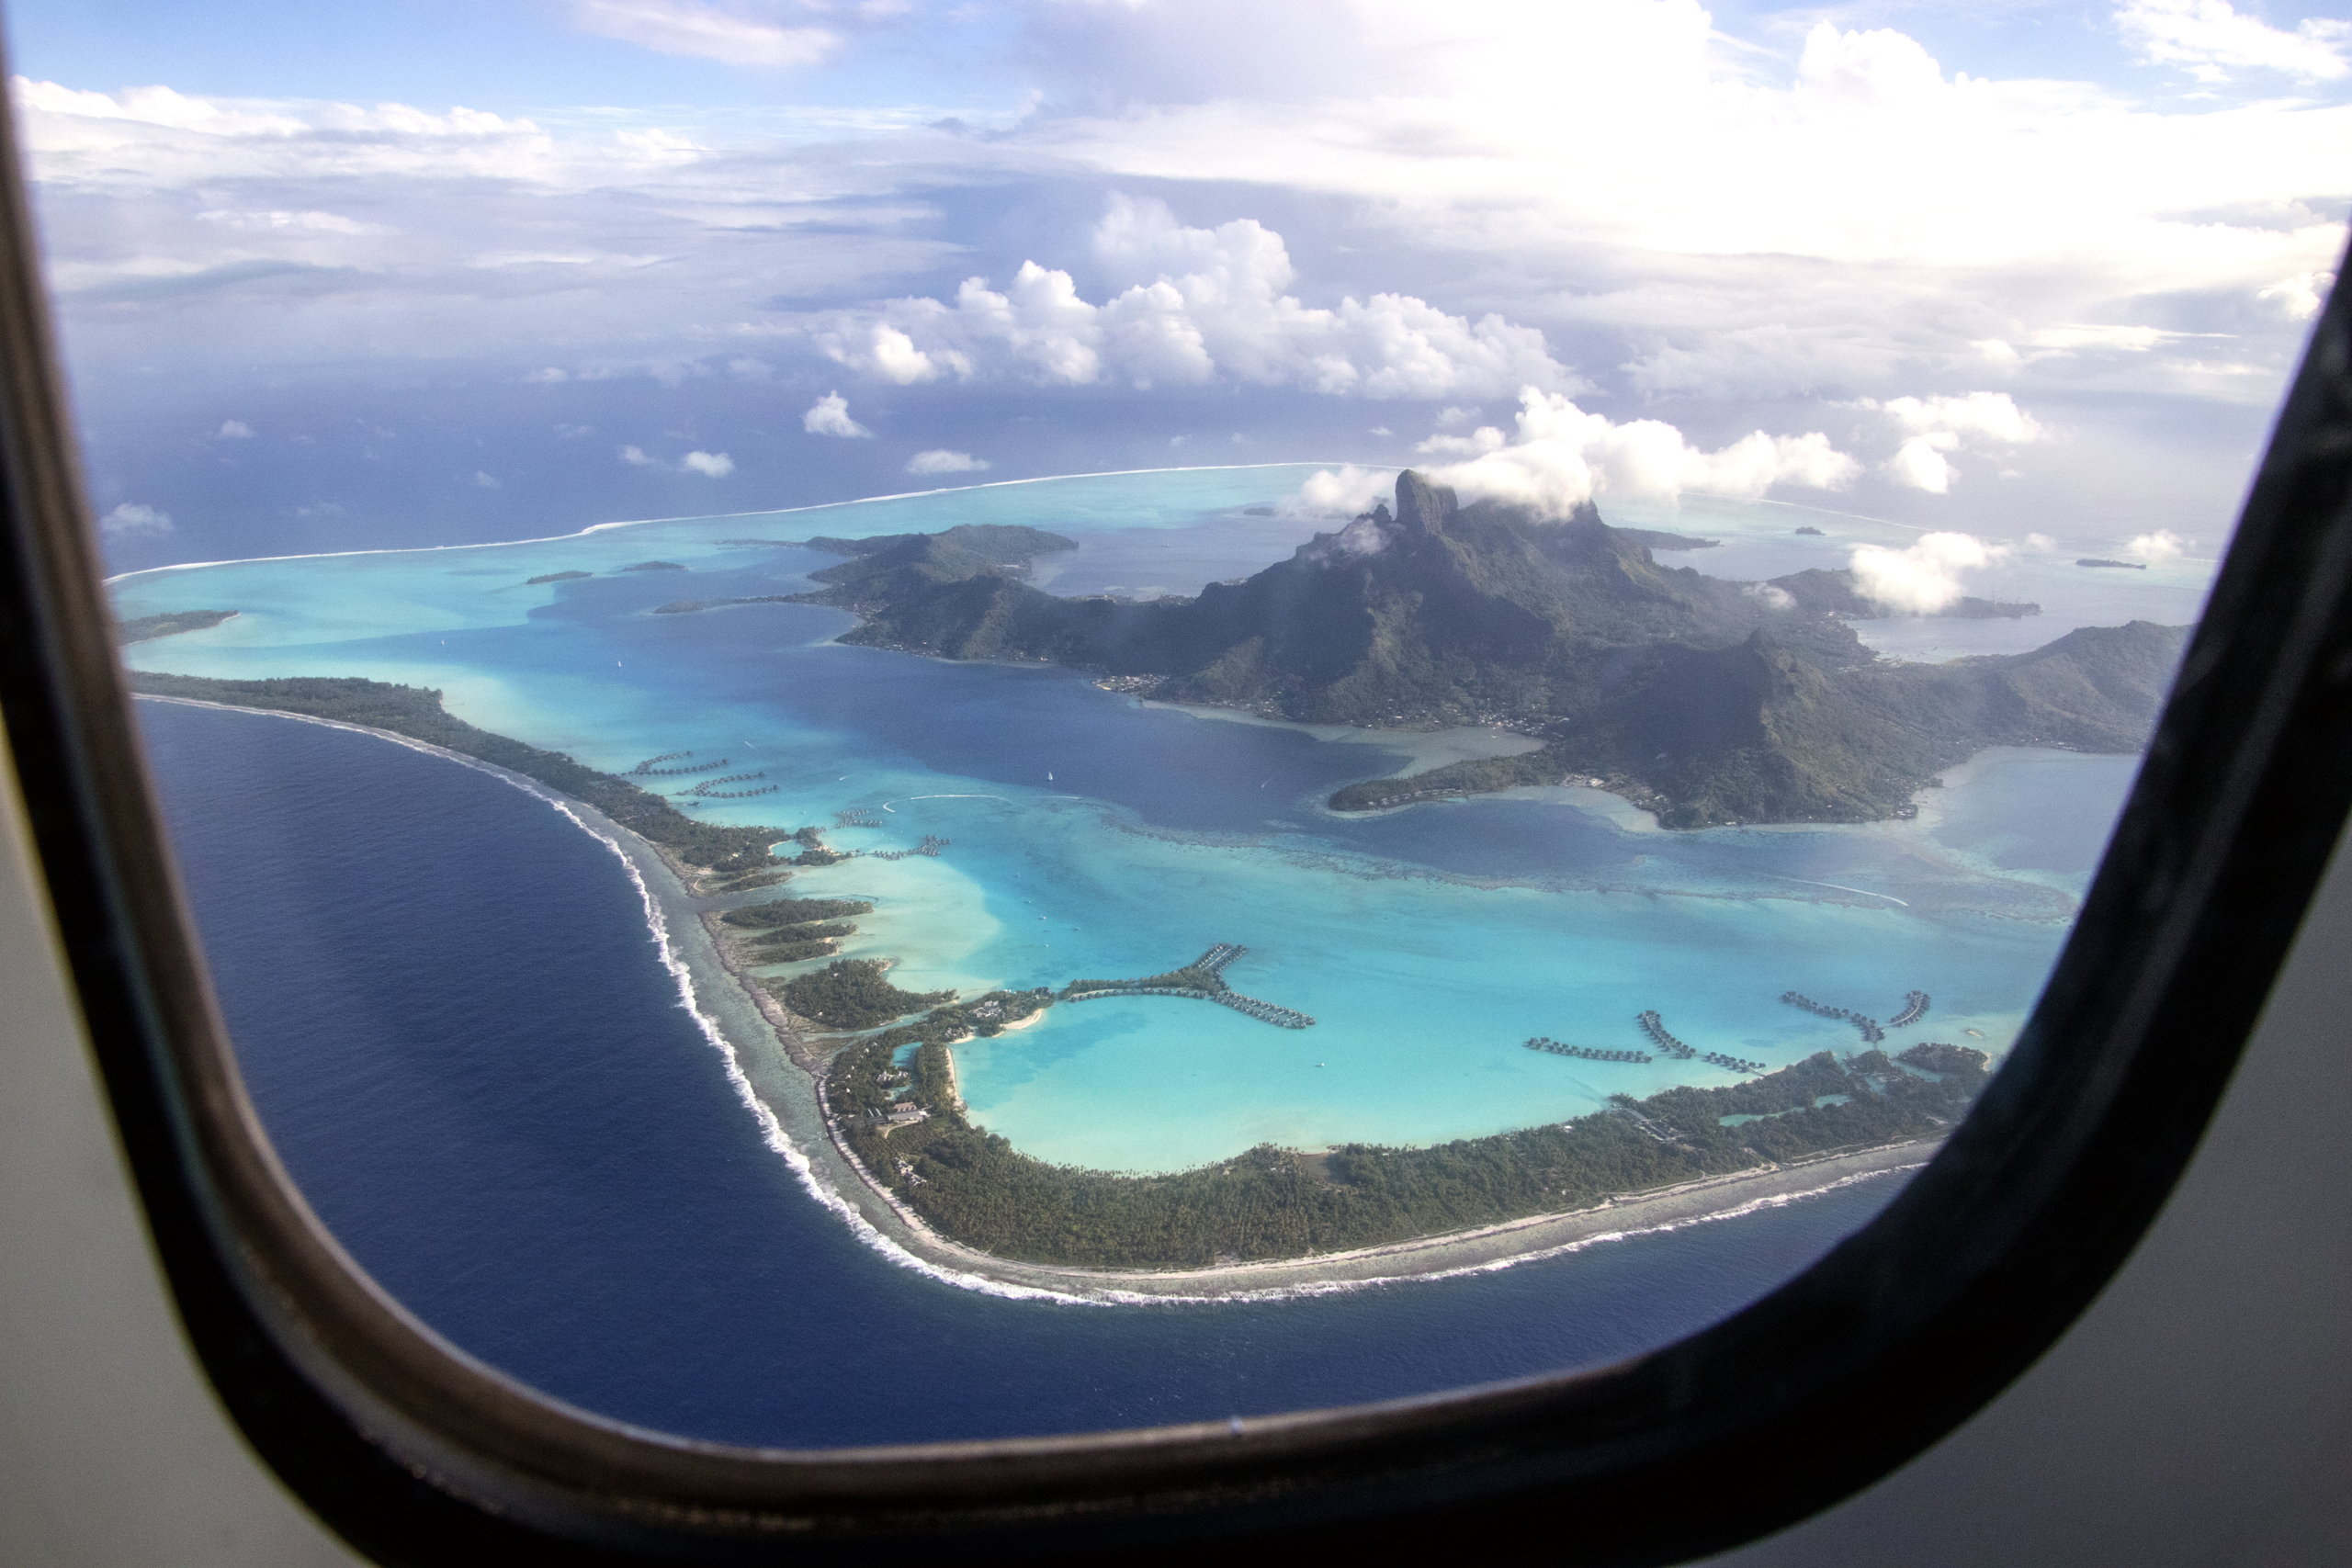 Bora Bora through the window